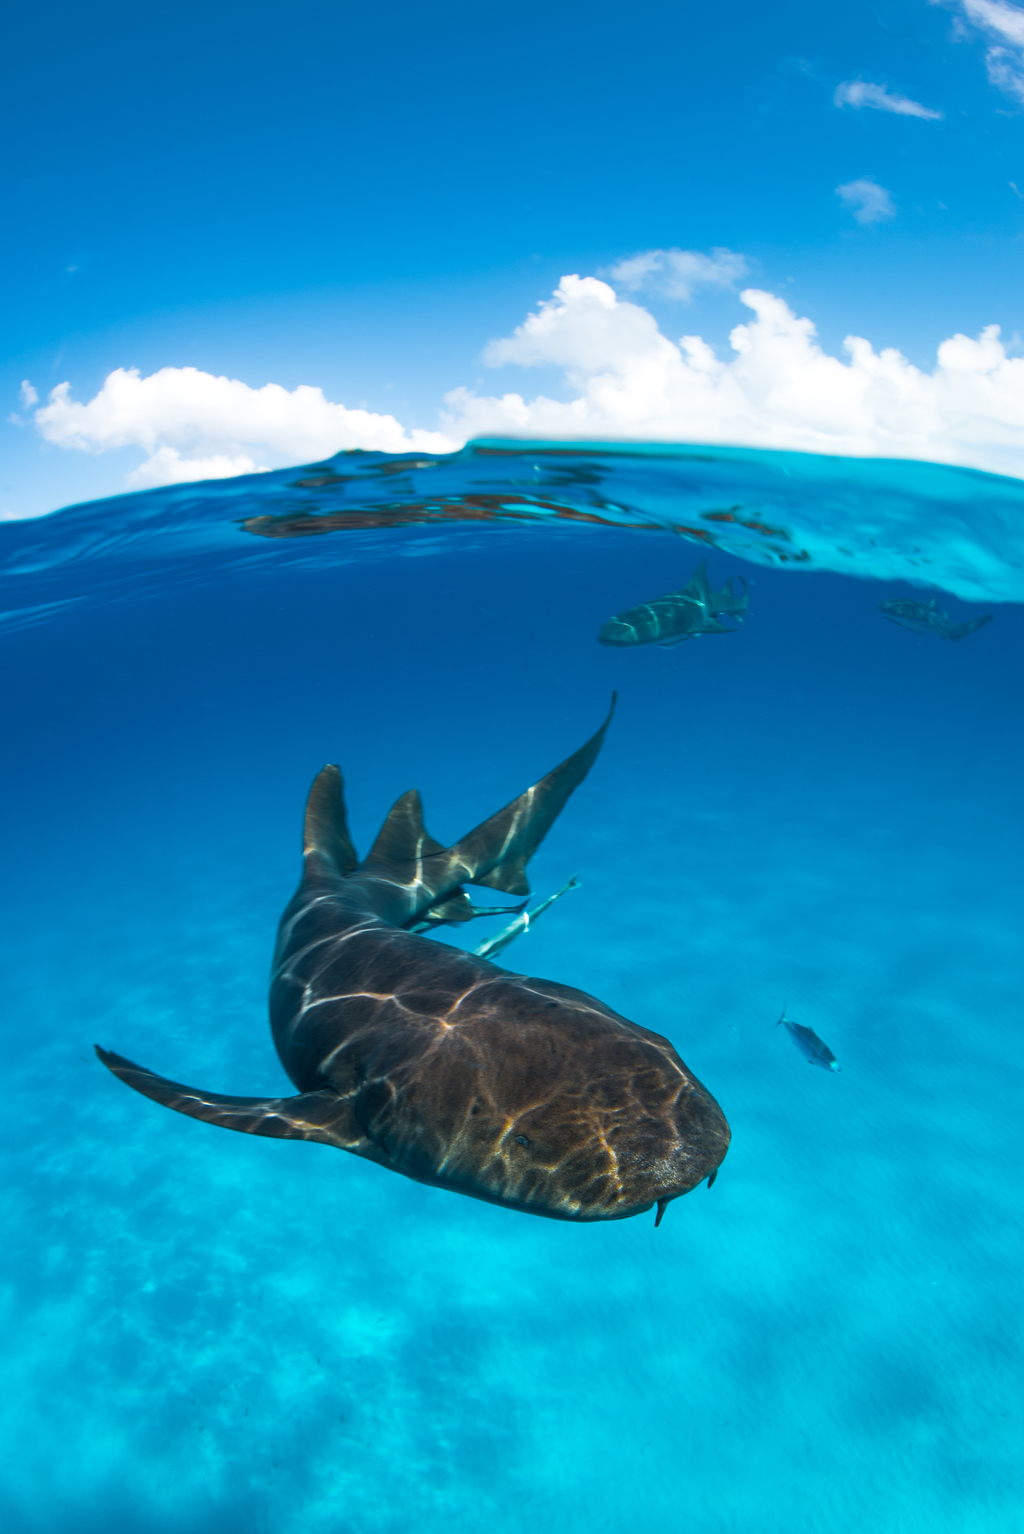 Tiburón nodriza en Bimini (Bahamas). (CORTESÍA / Iskander Itriago)
